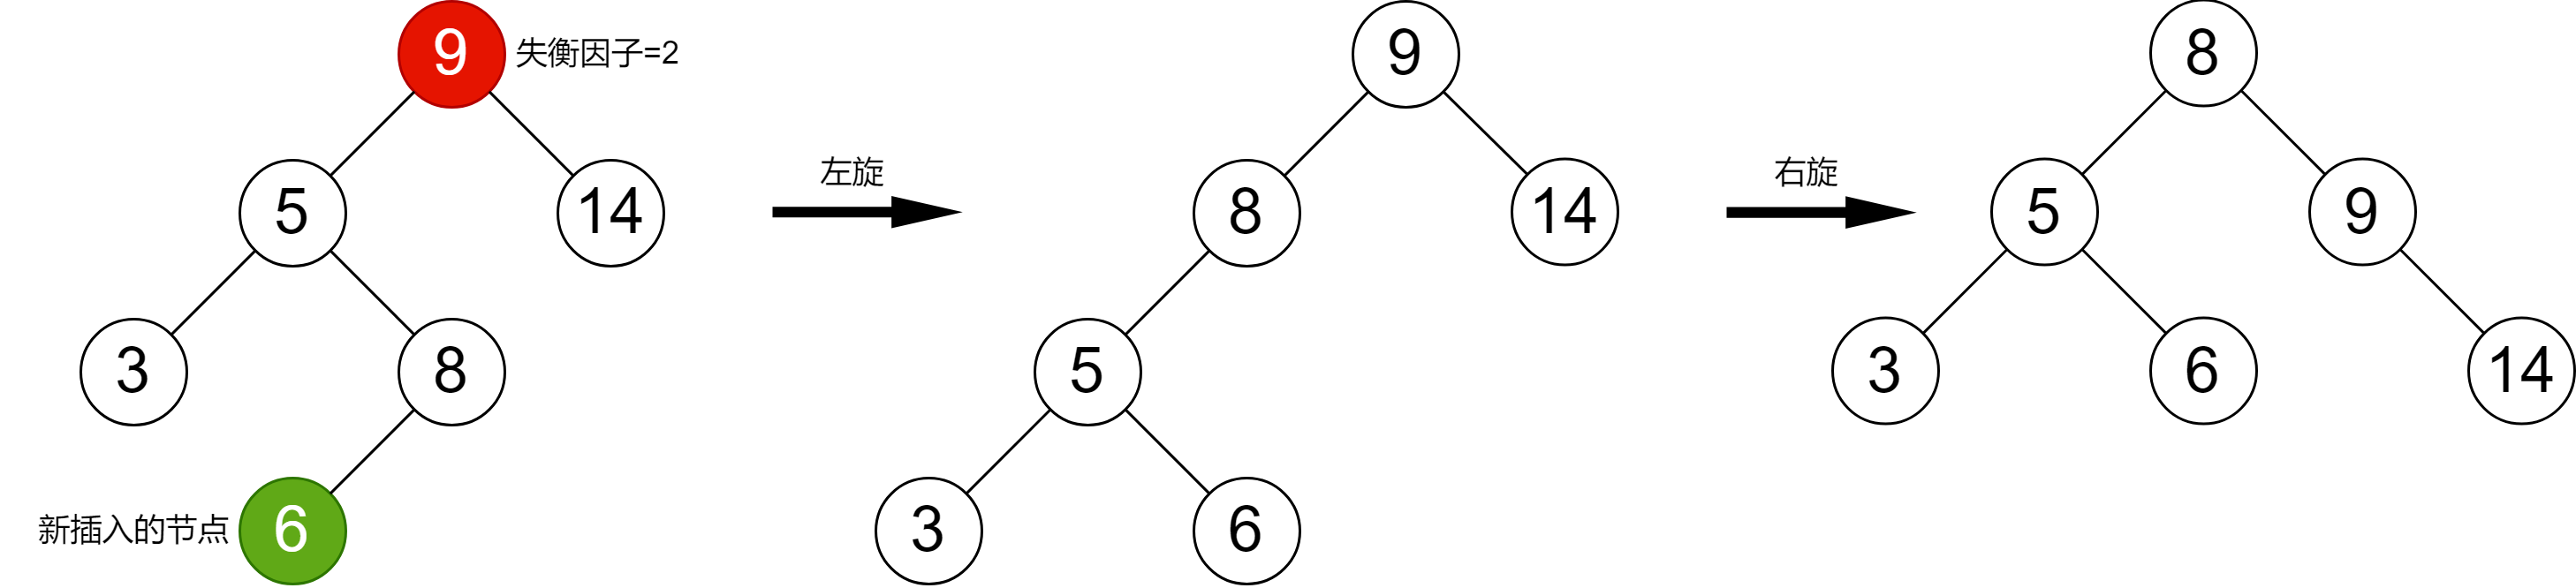 平衡二叉树-LR型.drawio